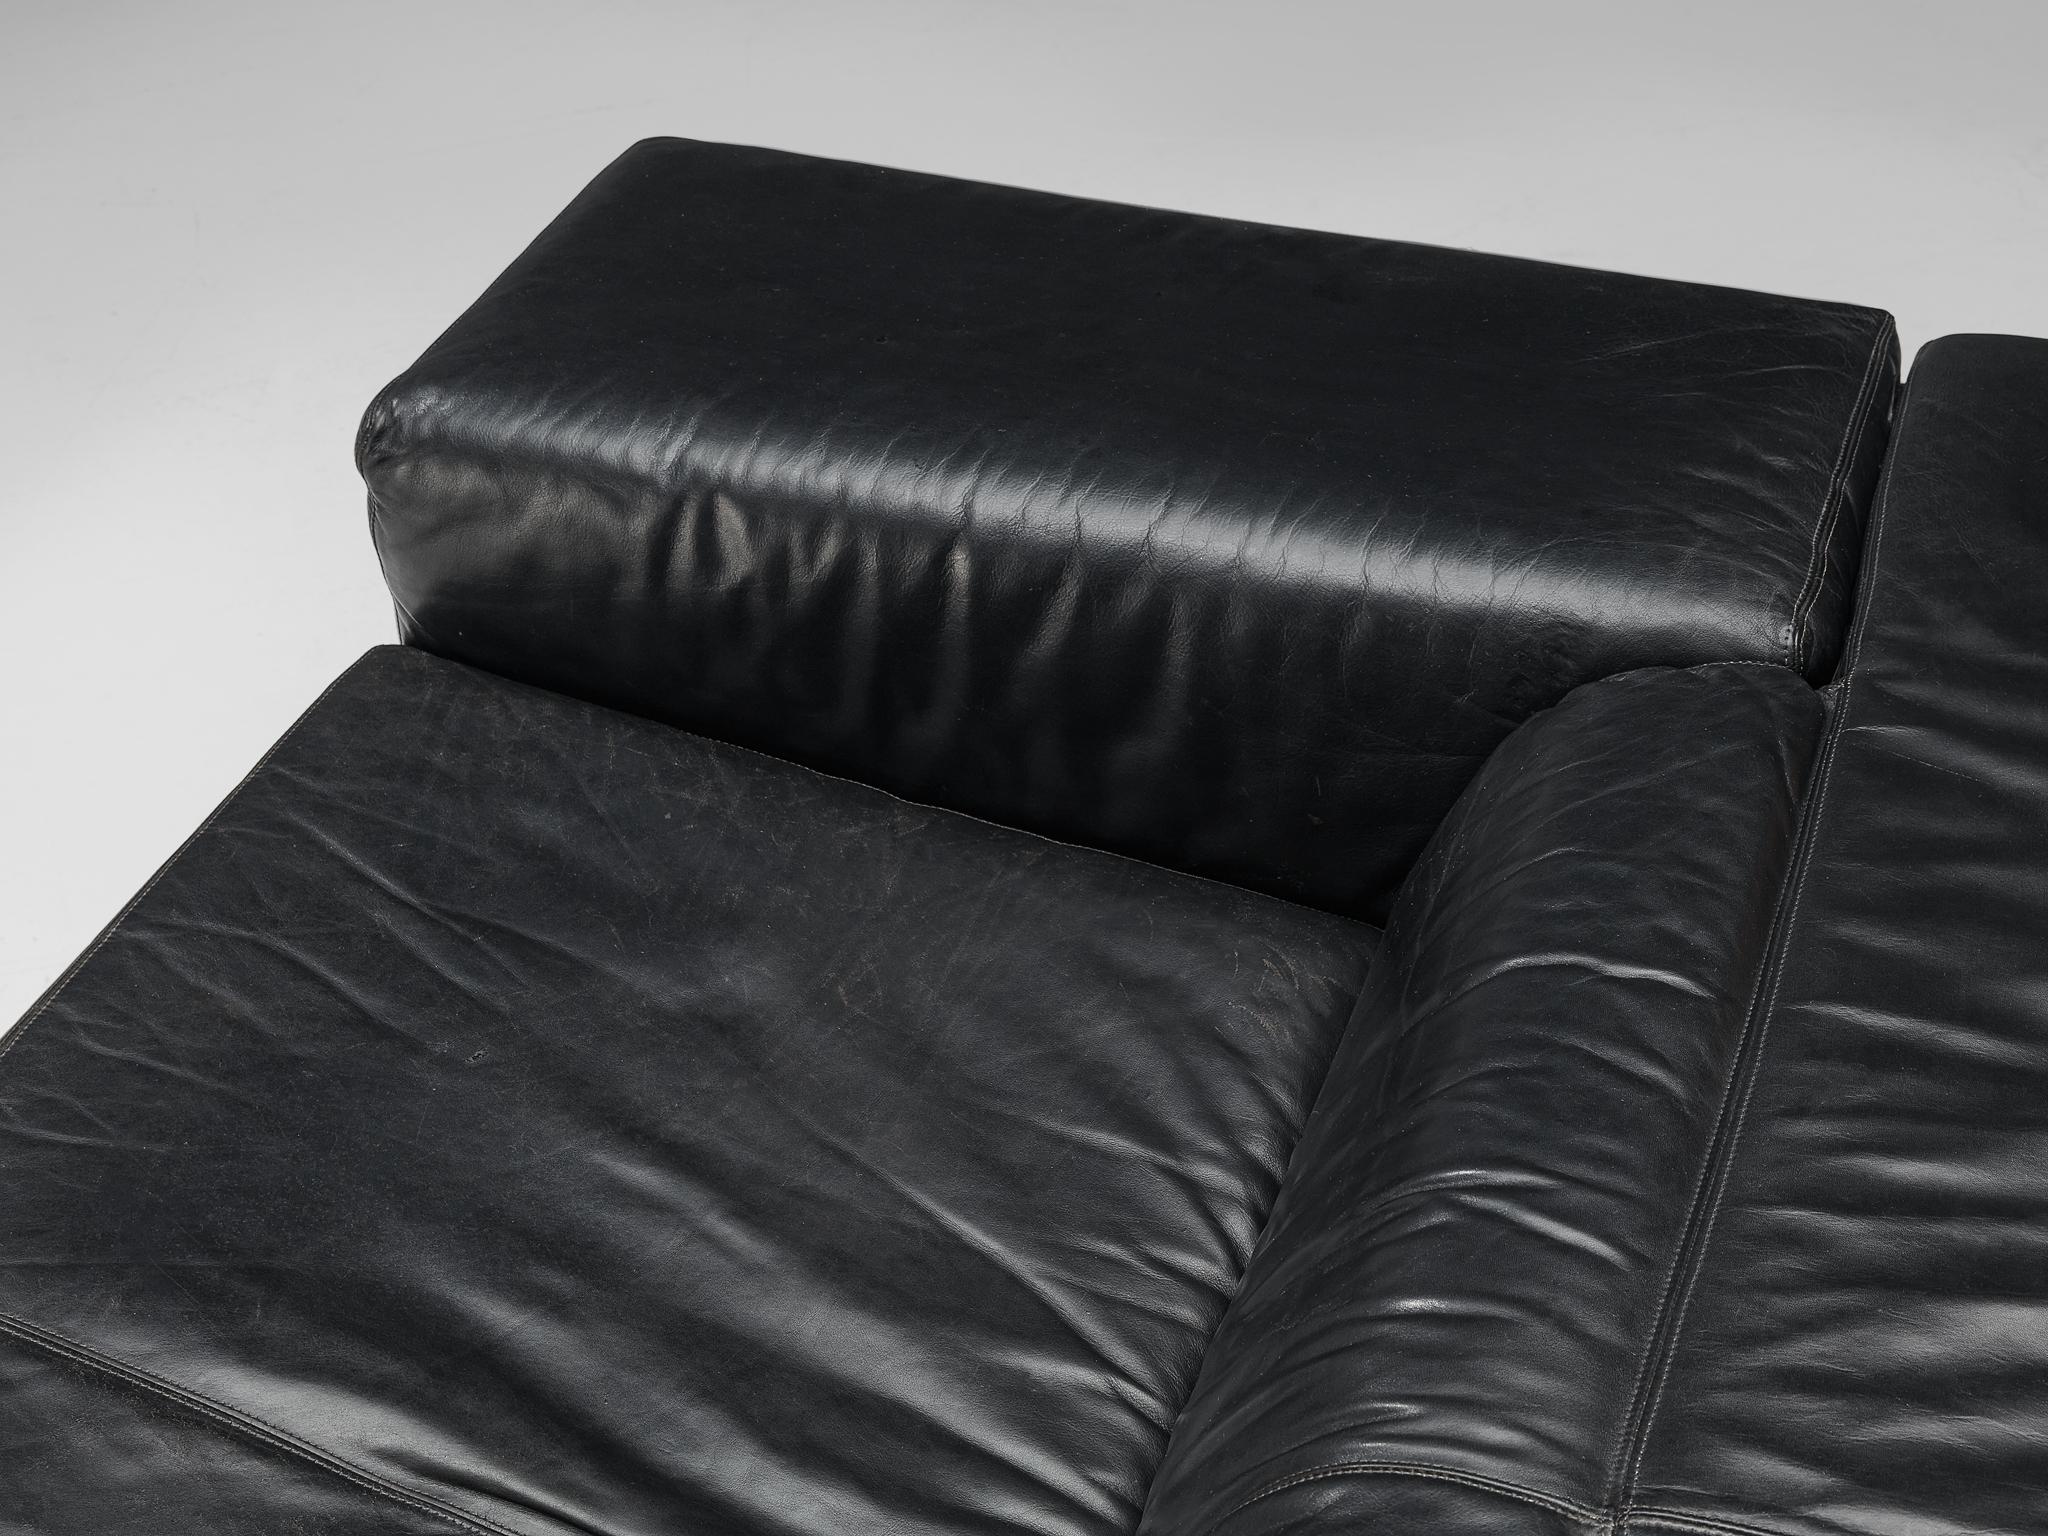 Cini Boeri for Knoll 'Brigadiere' Sofa in Black Leather  For Sale 1